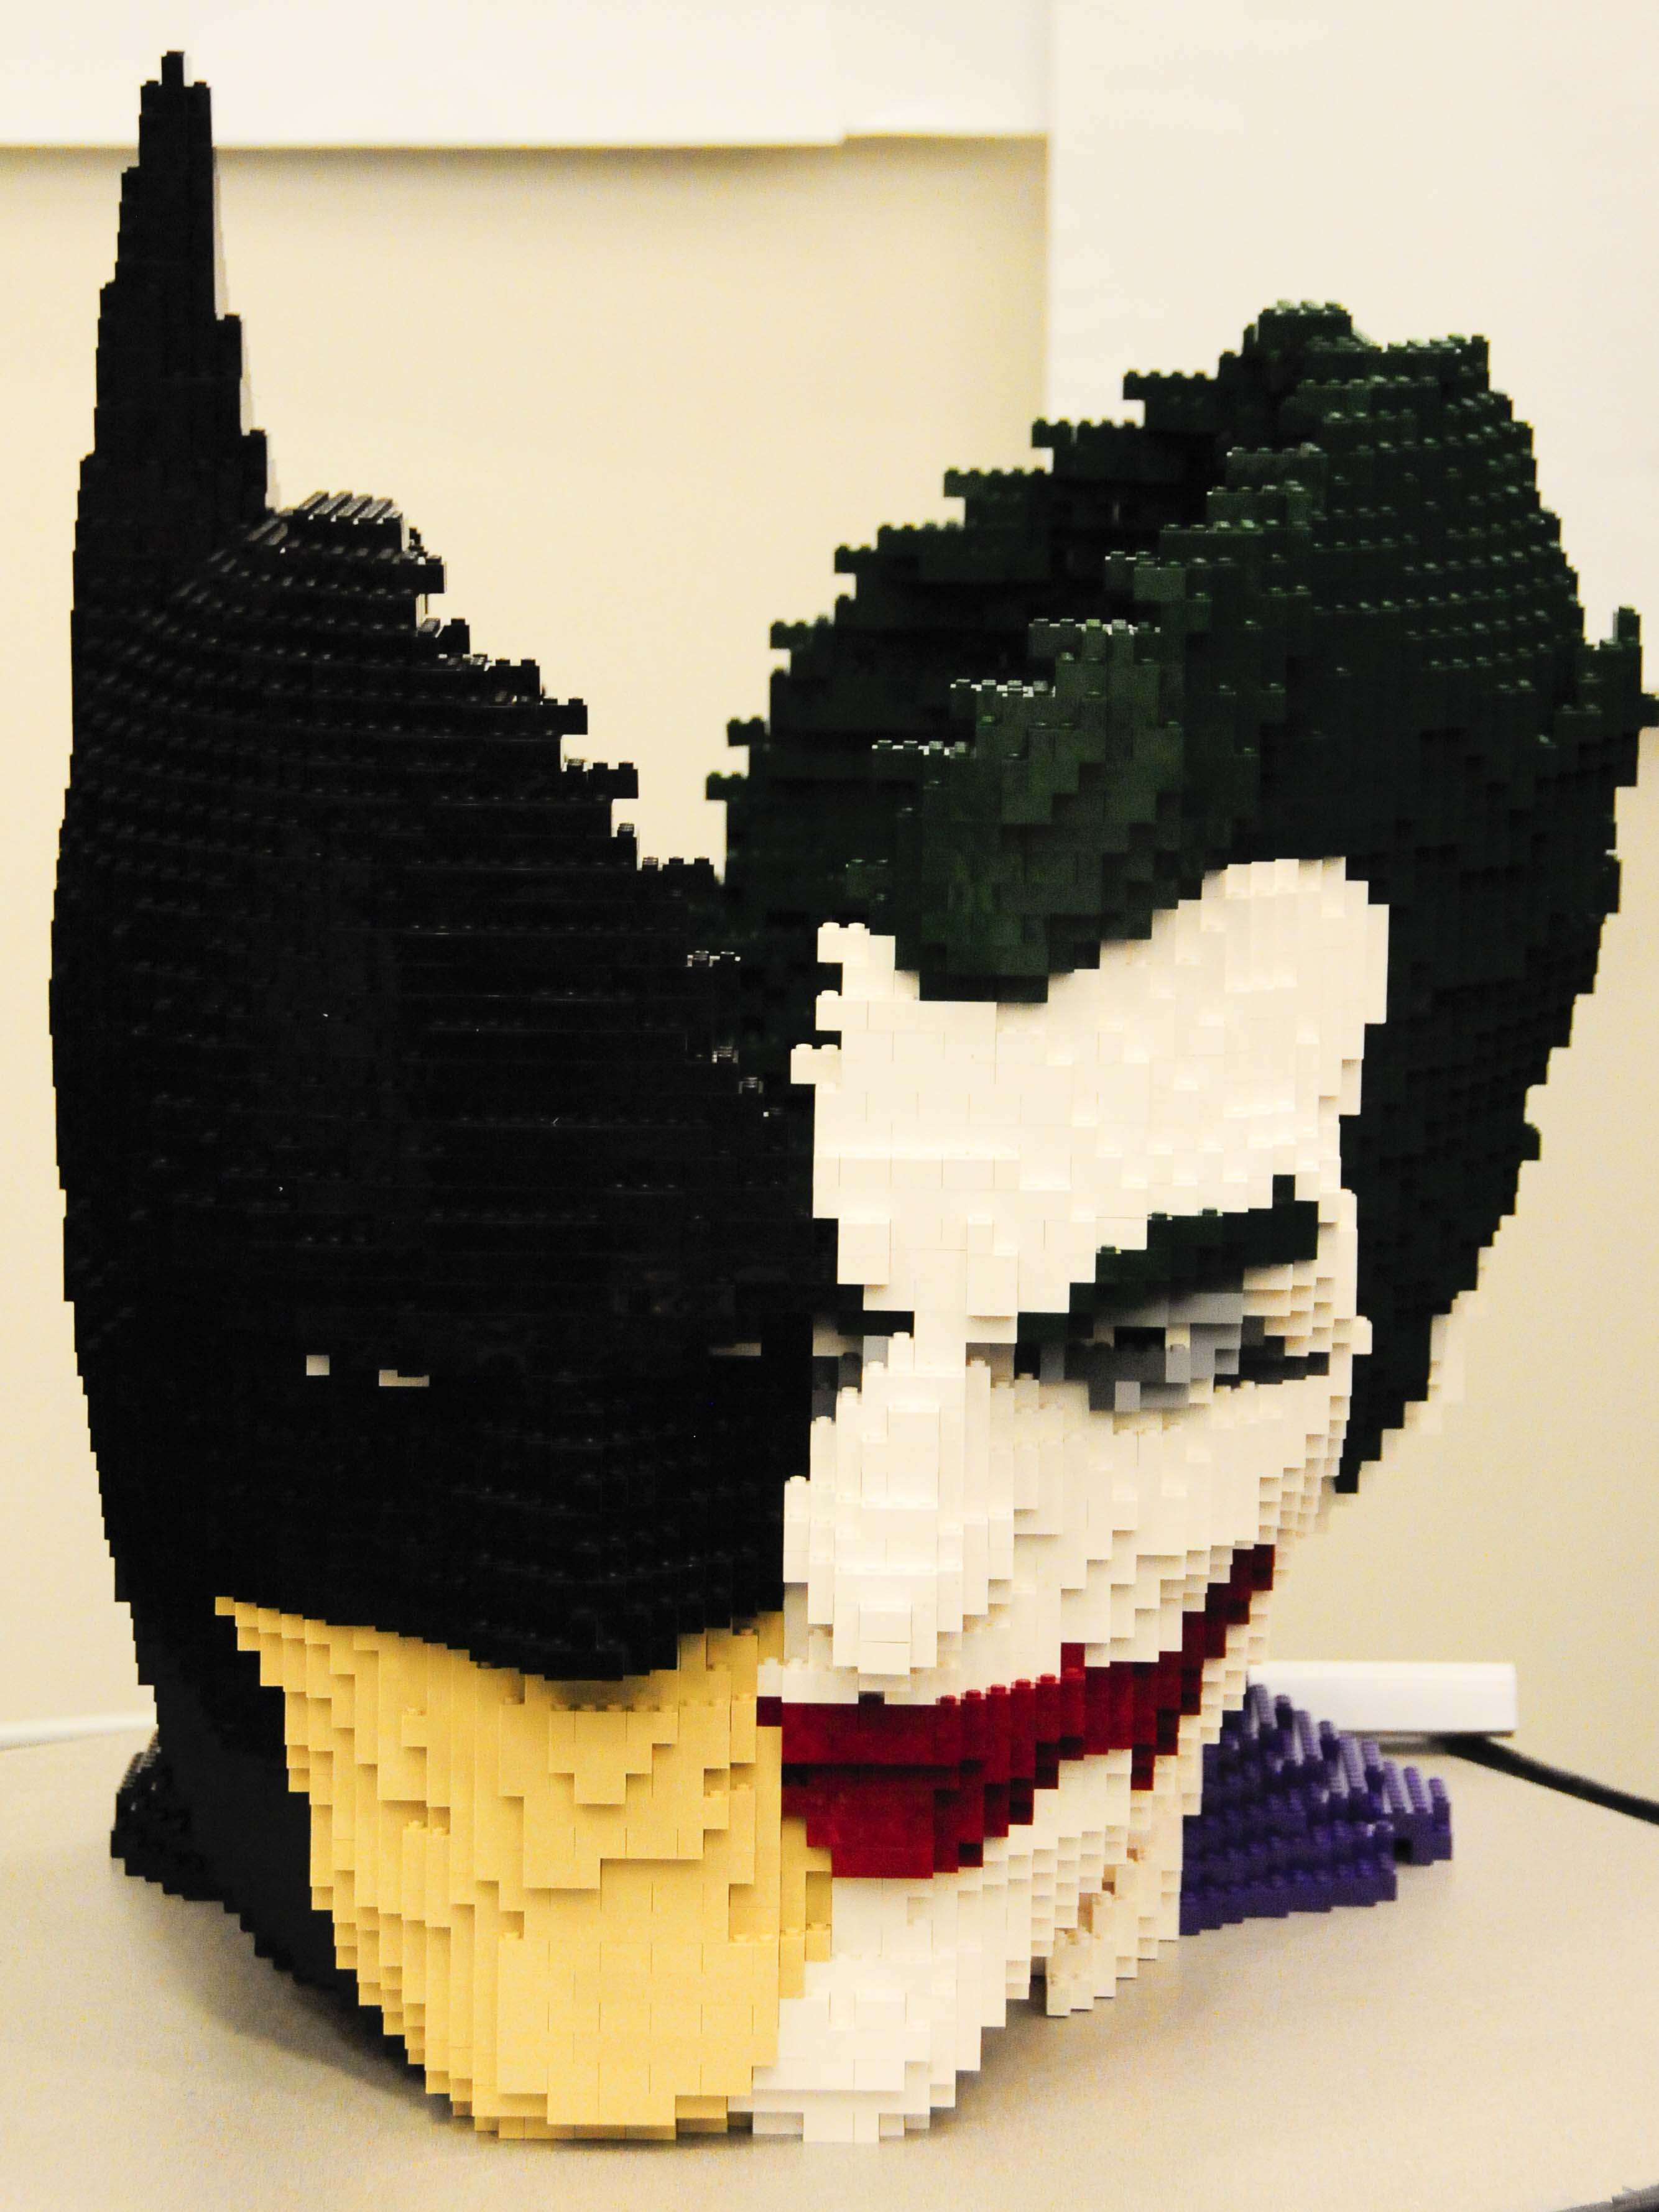 Joker Batman Pixel Art – BRIK